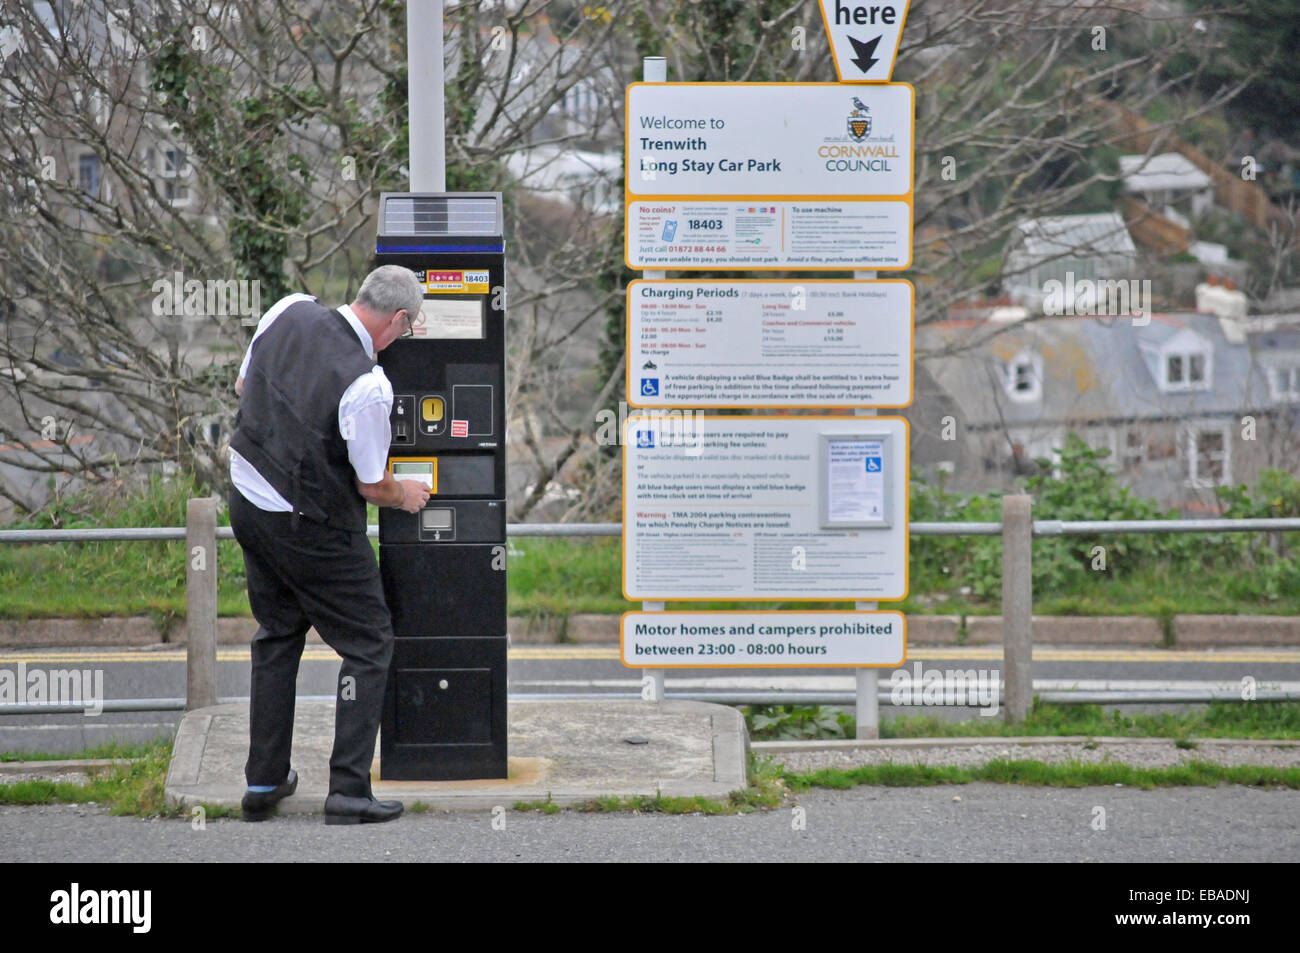 L'achat d'un ticket de parking à St Ives, Cornwall Banque D'Images